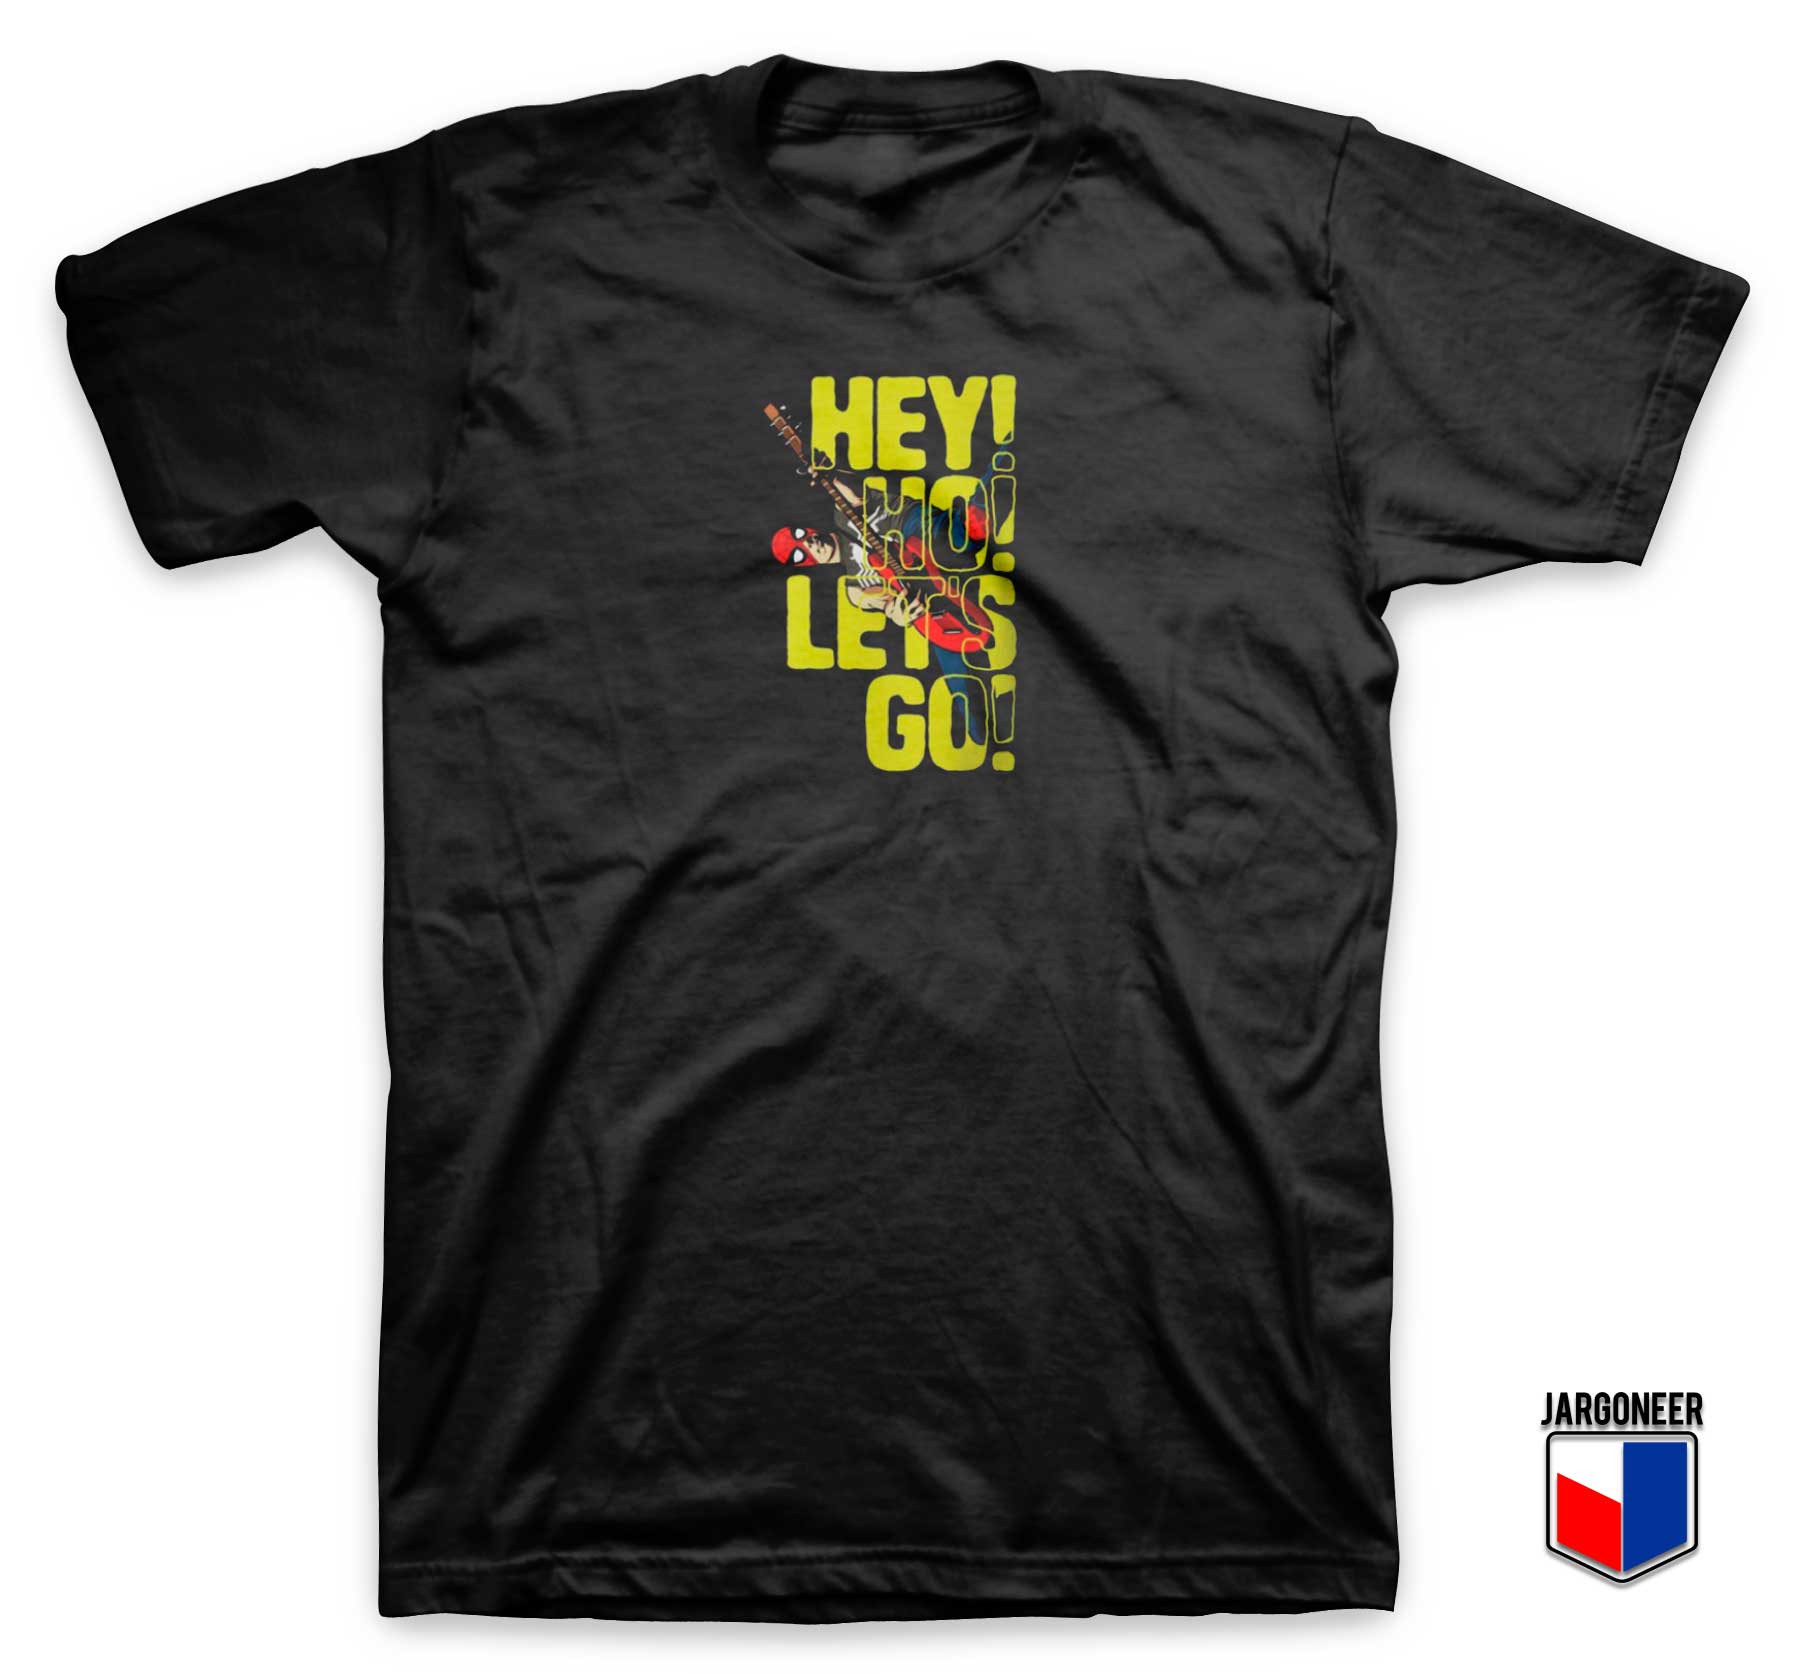 Hey Ho Lets Go Spider T Shirt - Shop Unique Graphic Cool Shirt Designs